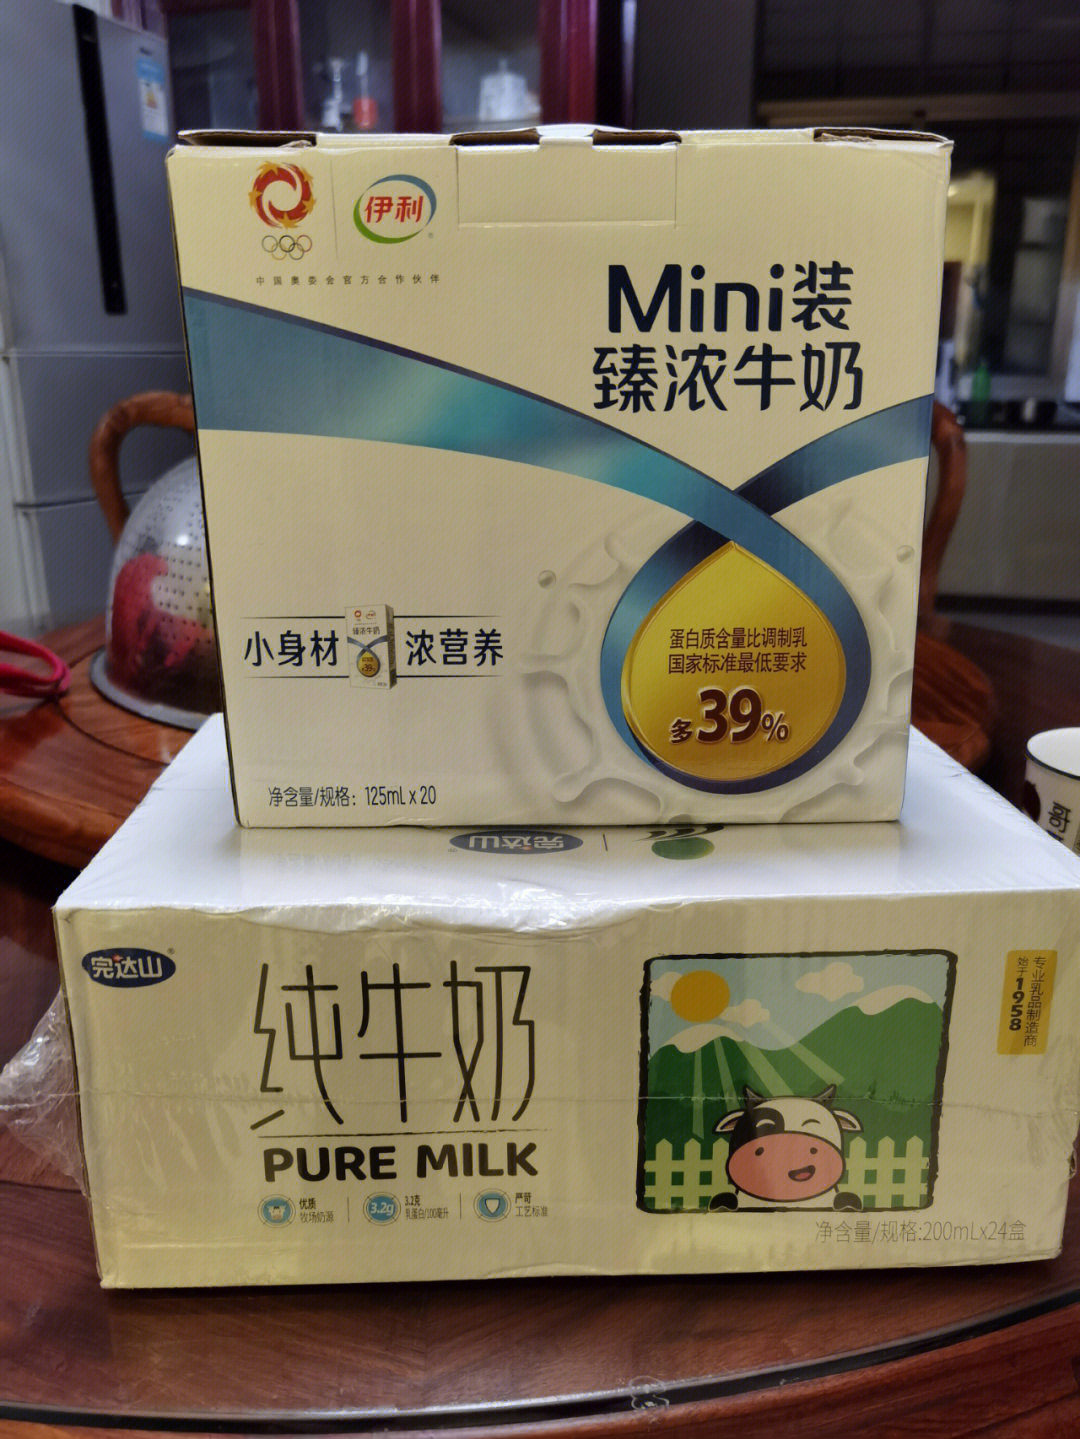 学生牛奶决定买完达山因为口感好